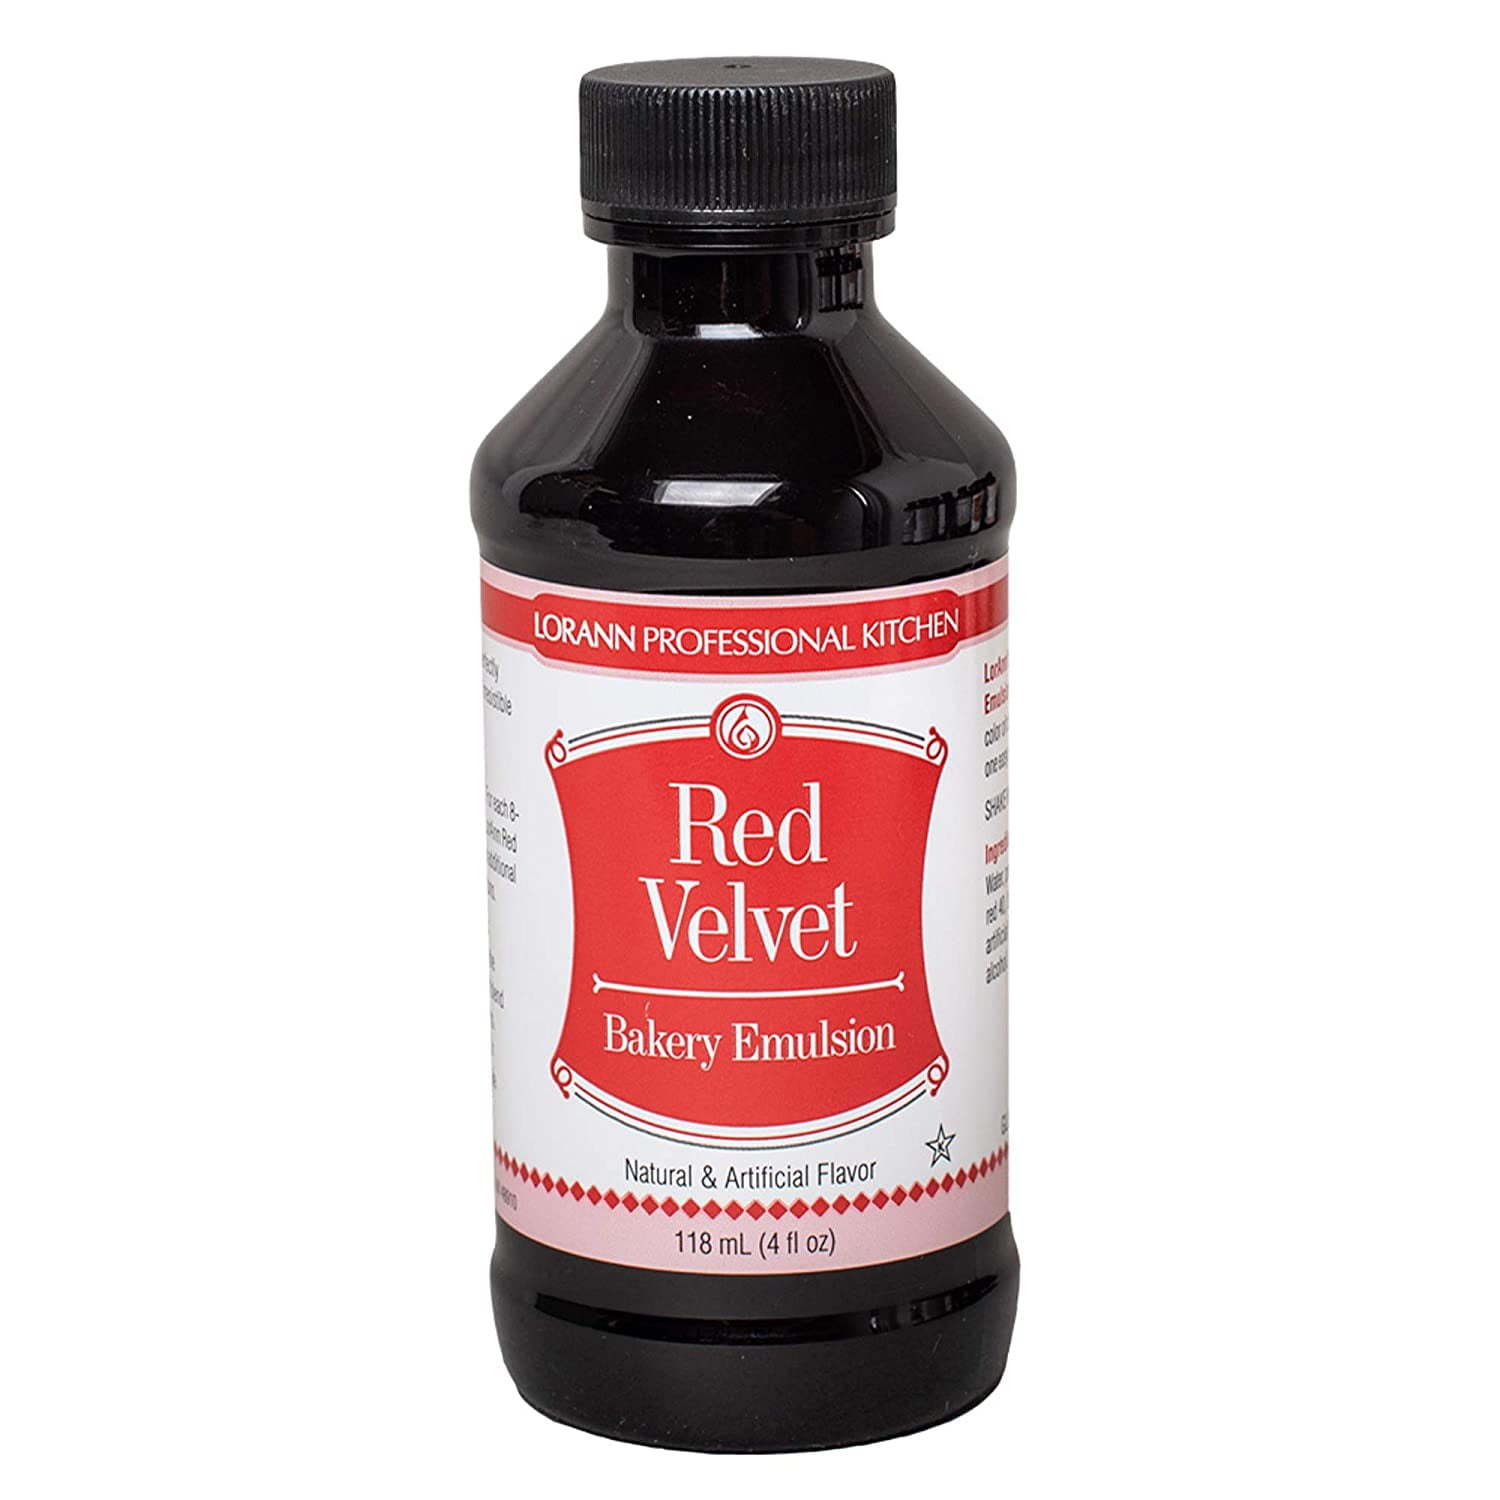 LorAnn Red Velvet Bakery Emulsion 4 ounce bottle Walmart com